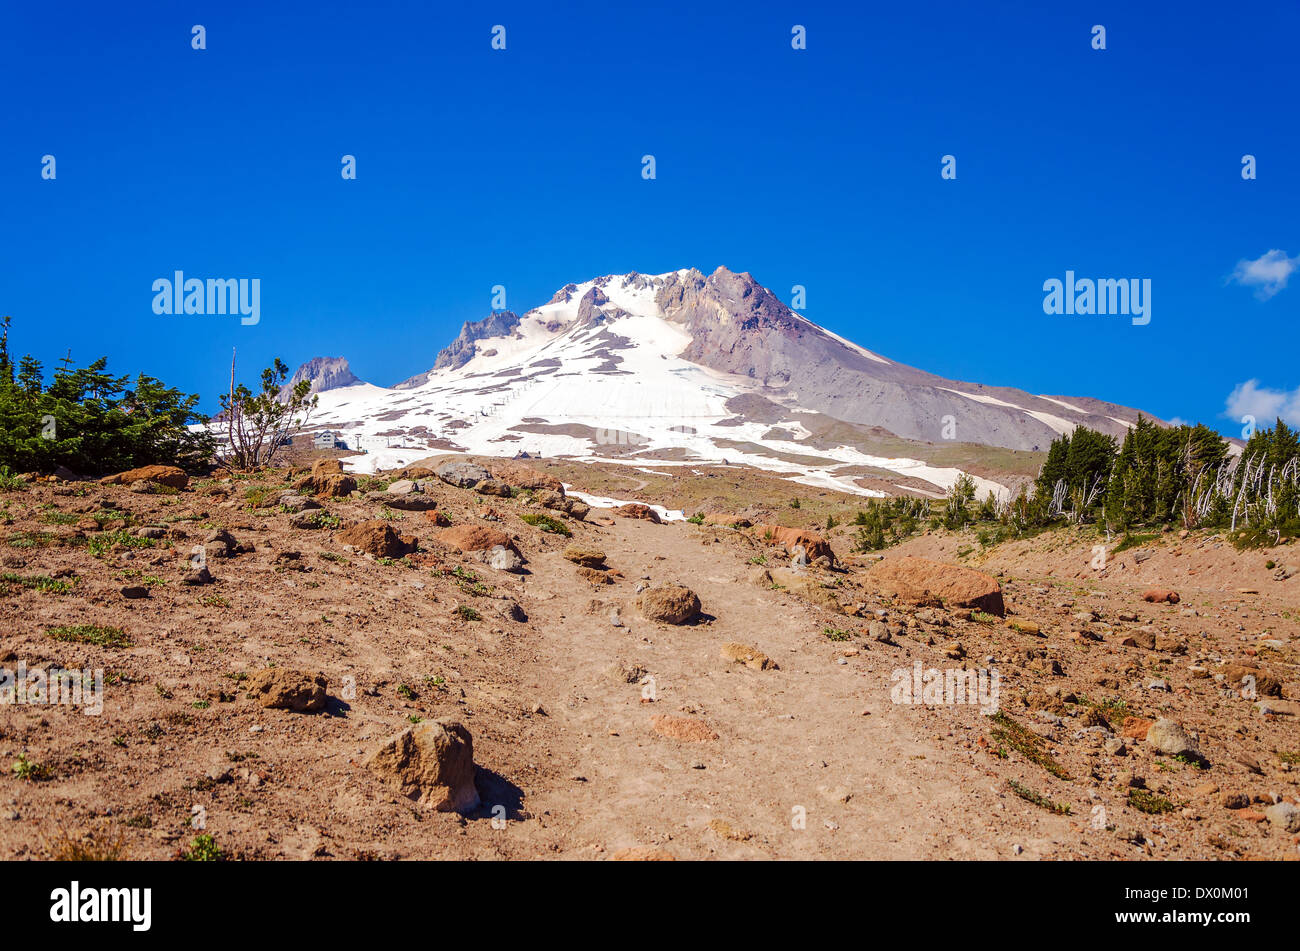 Vue sur le sommet de Mt. Capot, partie de la chaîne des Cascades en Oregon Banque D'Images